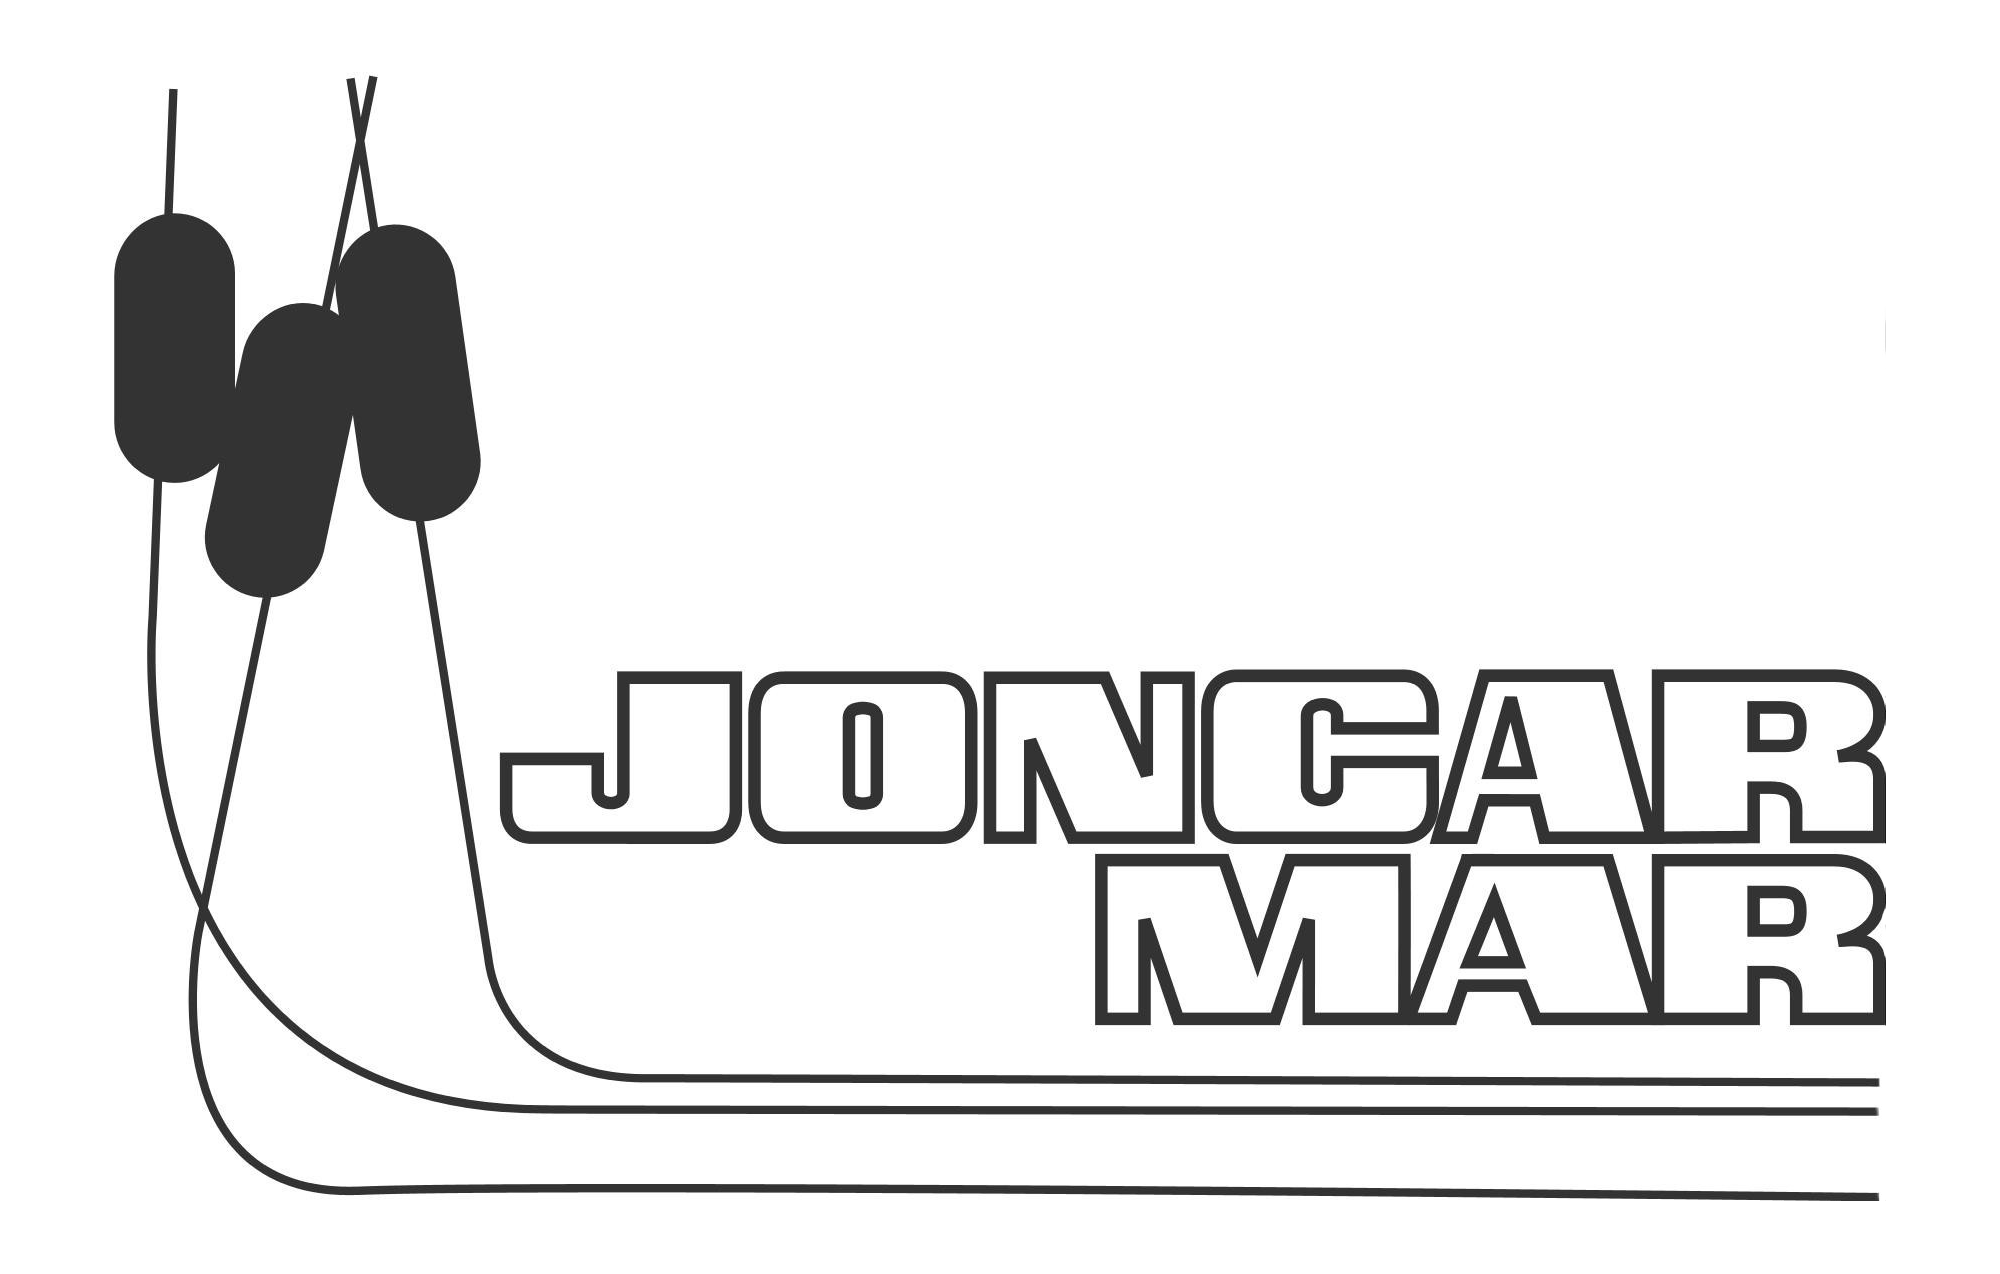 Joncar Mar